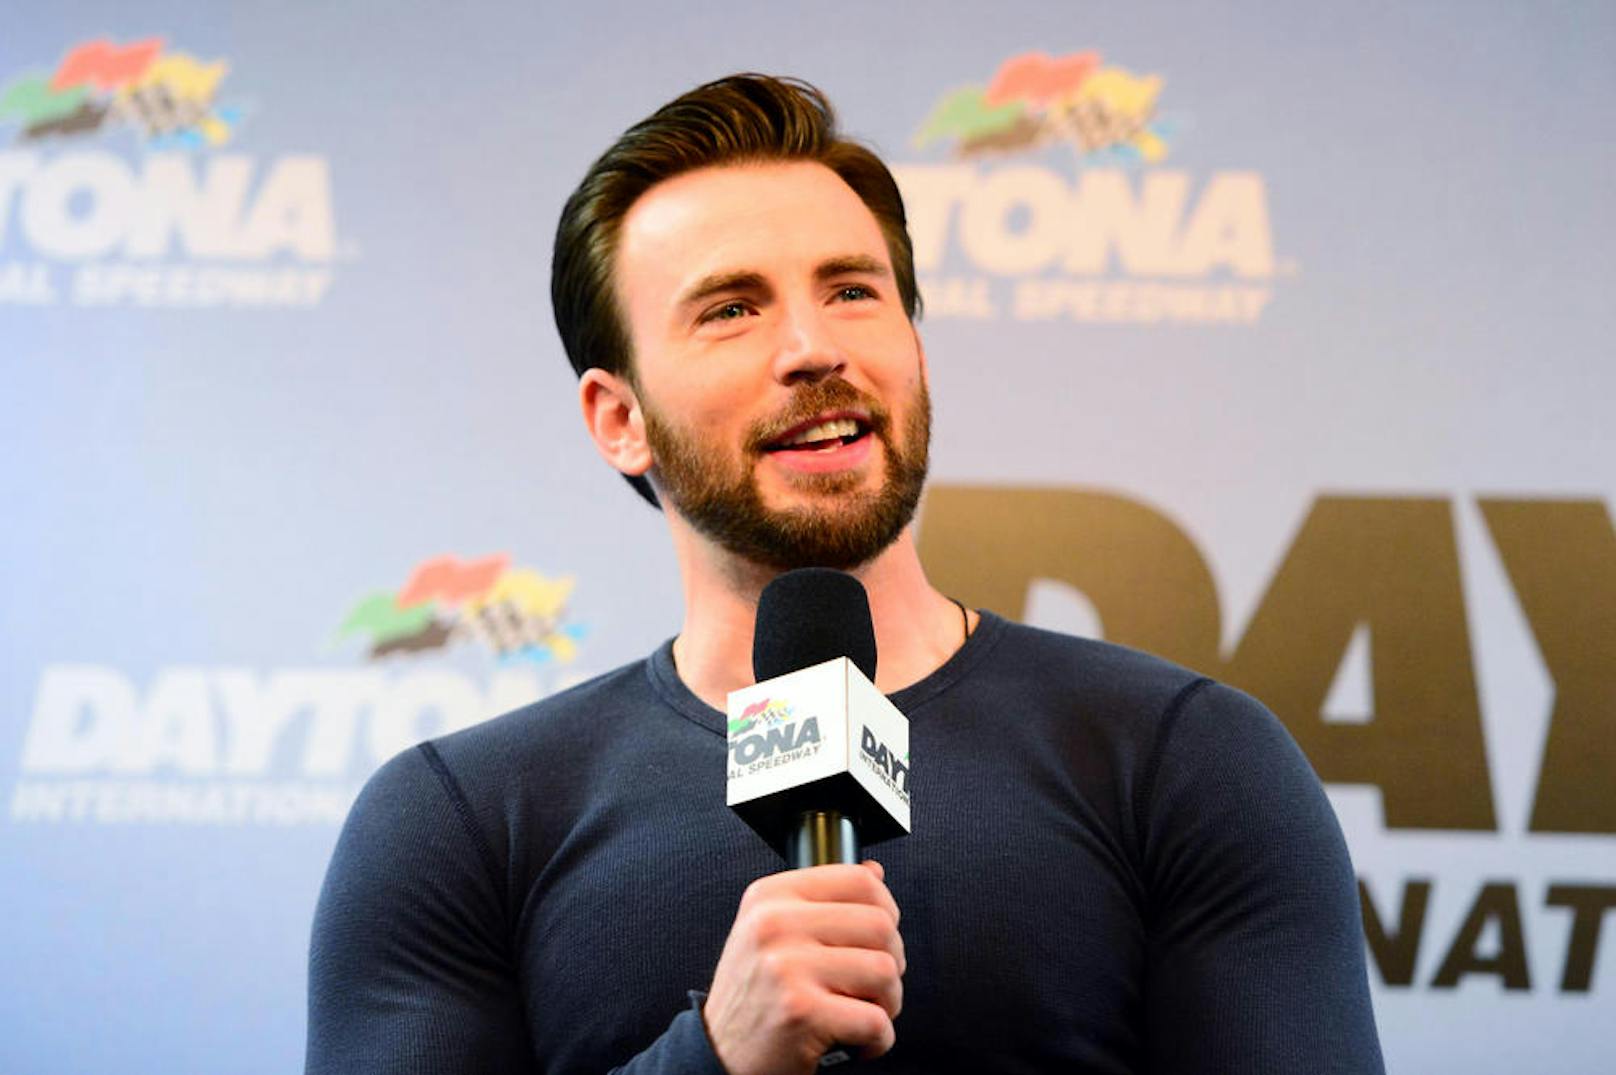 "Captain America"-Darsteller <strong>Chris Evans</strong> ist überwältigt vom Mut des kleinen Bridger. "Du bist ein Held", lobt der Star den jungen Lebensretter.